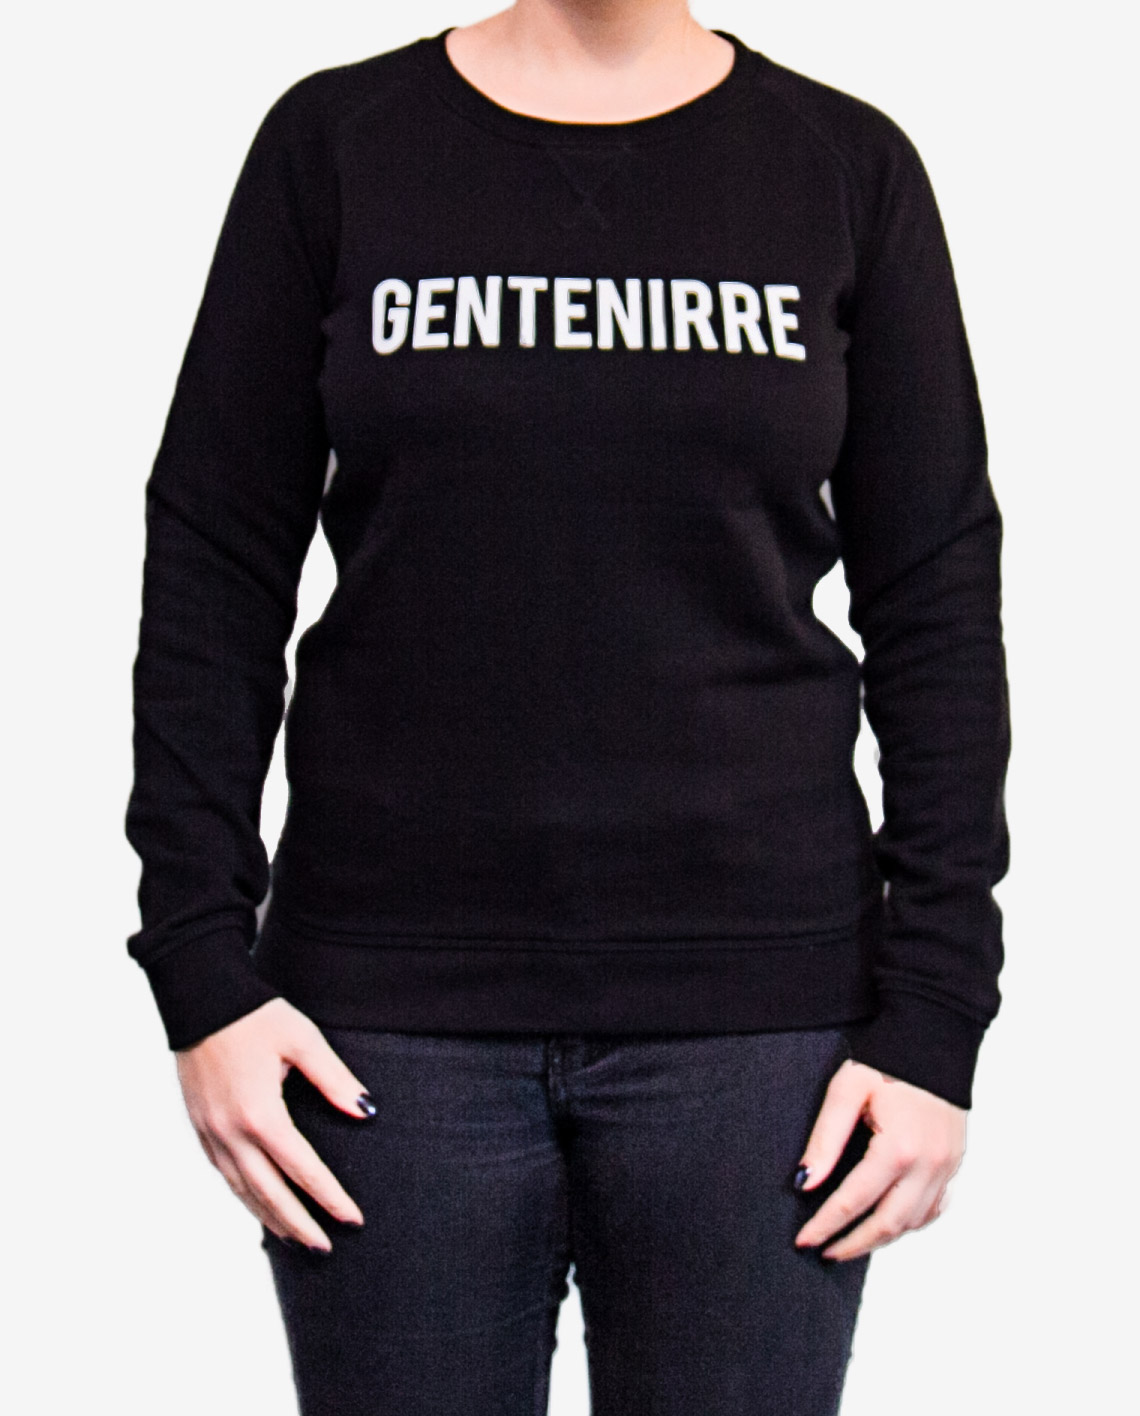 Sweater Gentenirre zwart vrouw